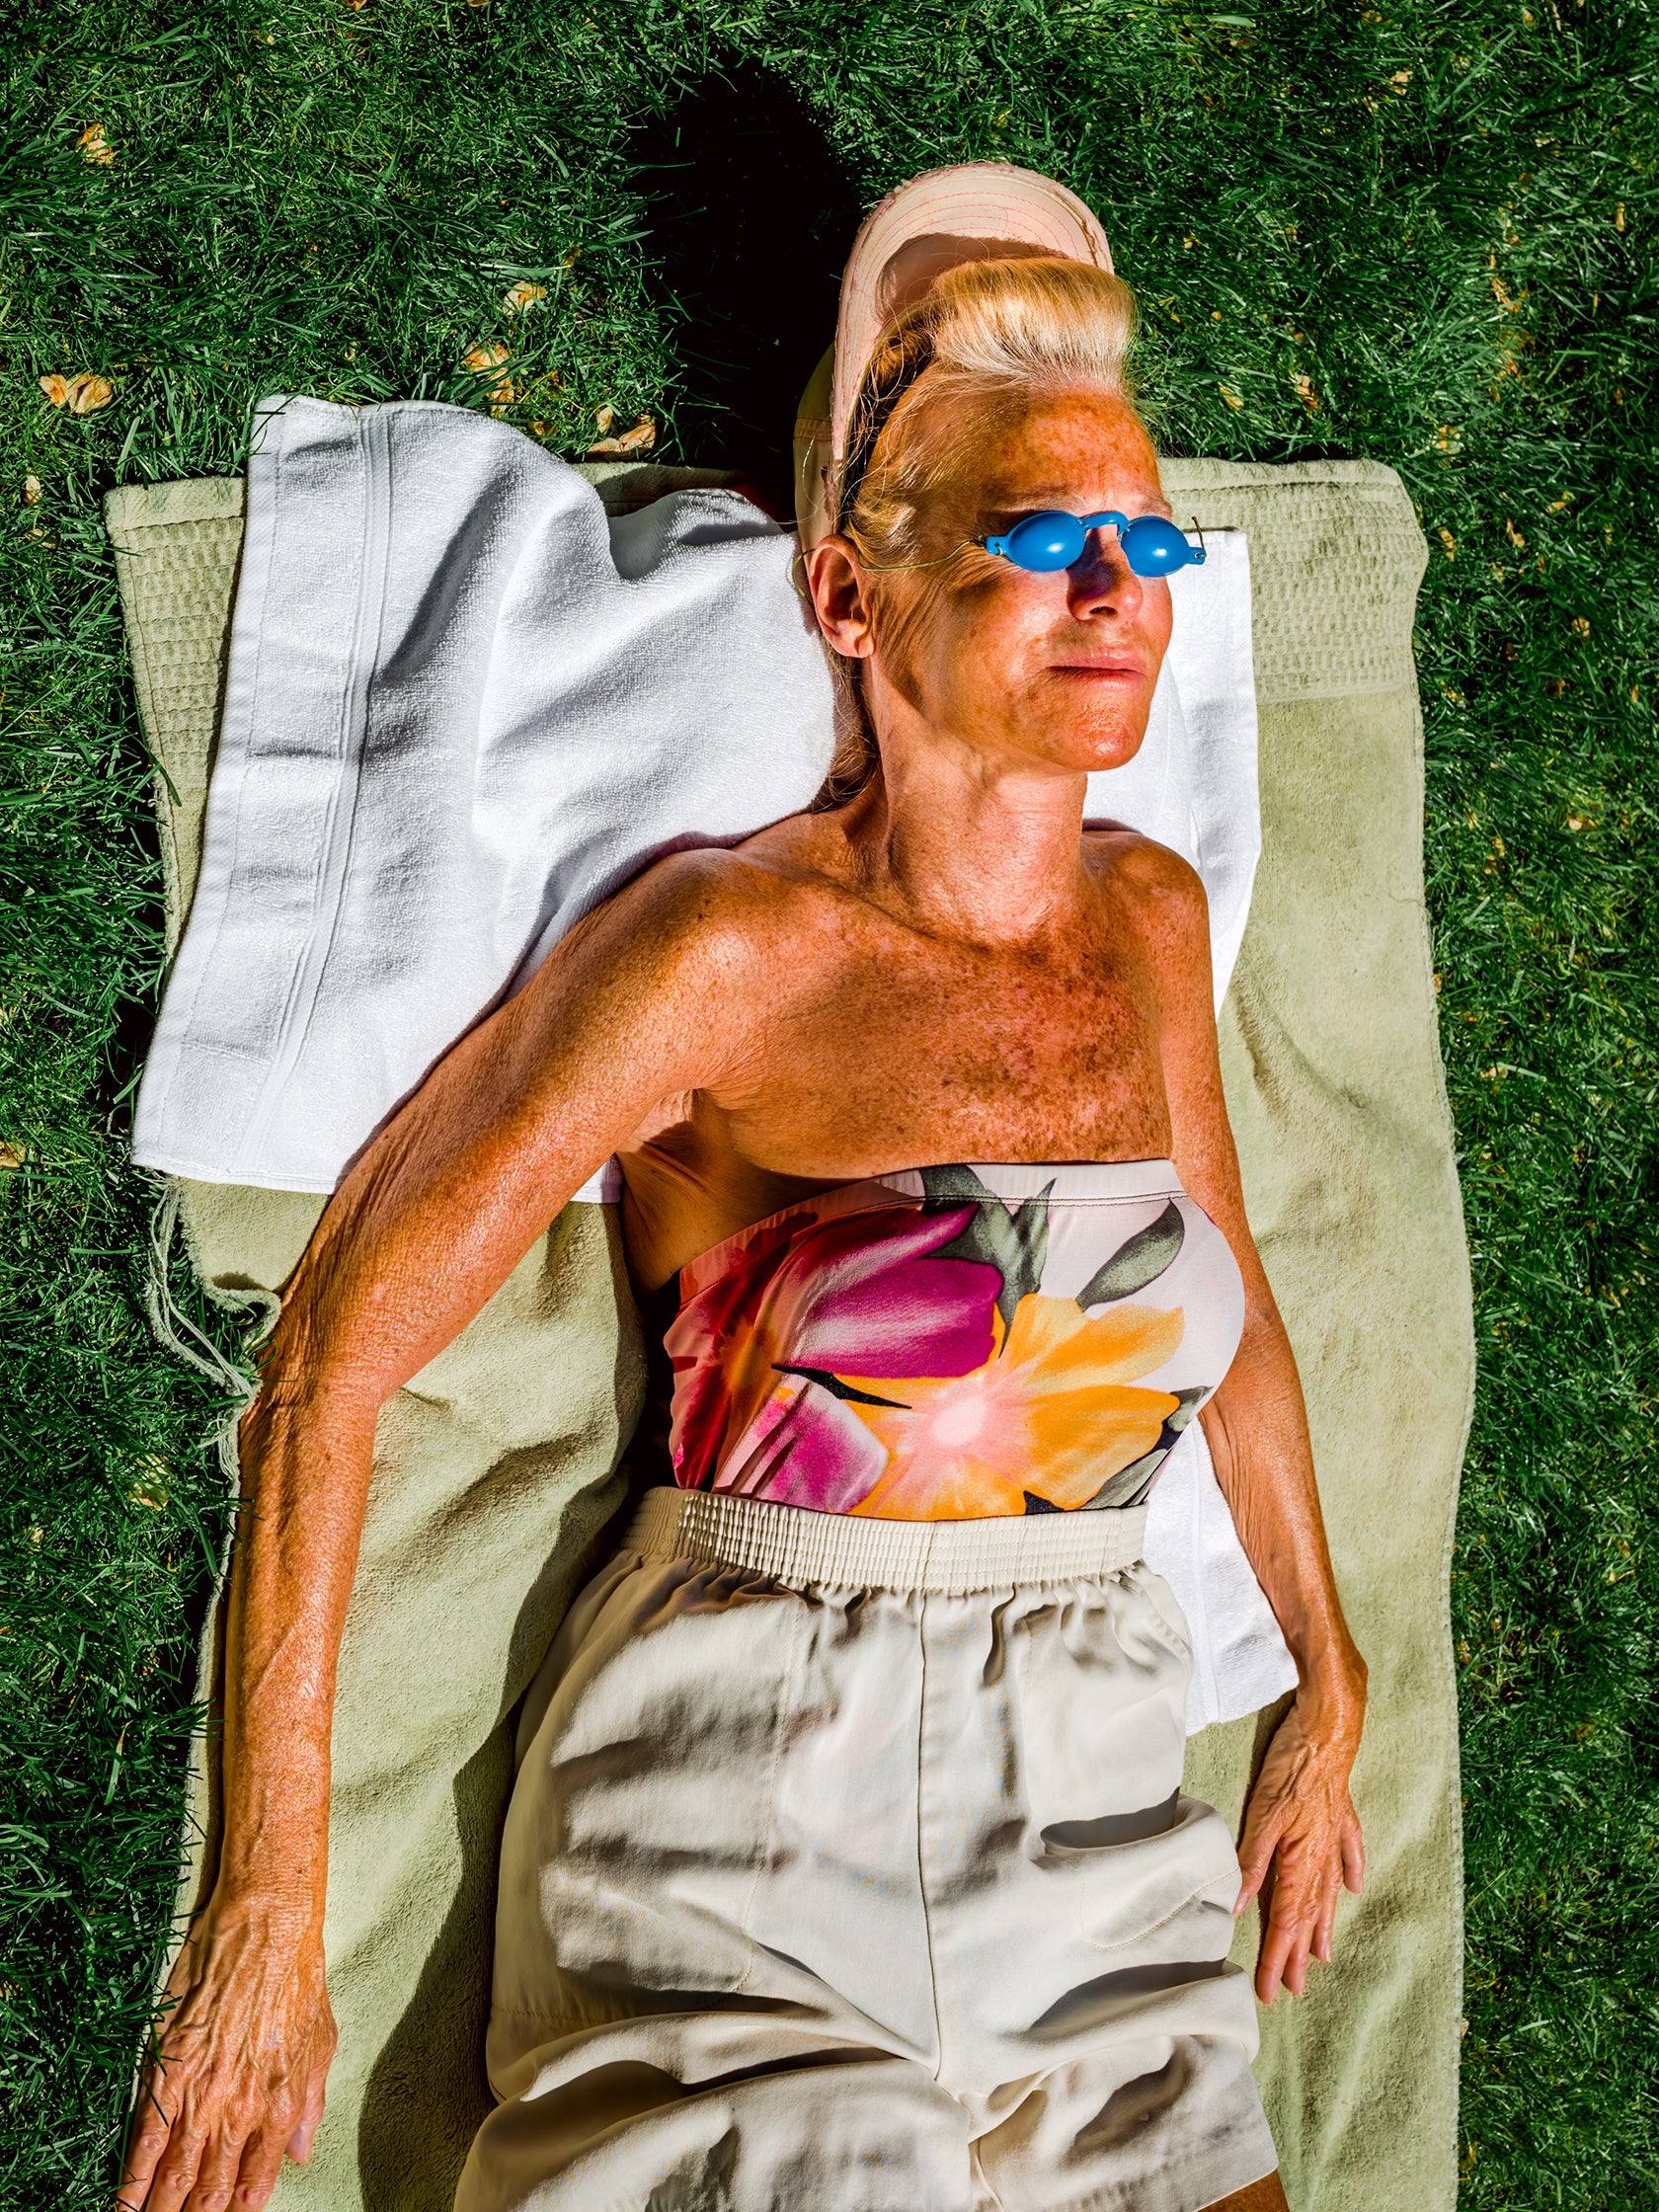 Sunbather by Daniel Featherstone - Mankovsky Gallery